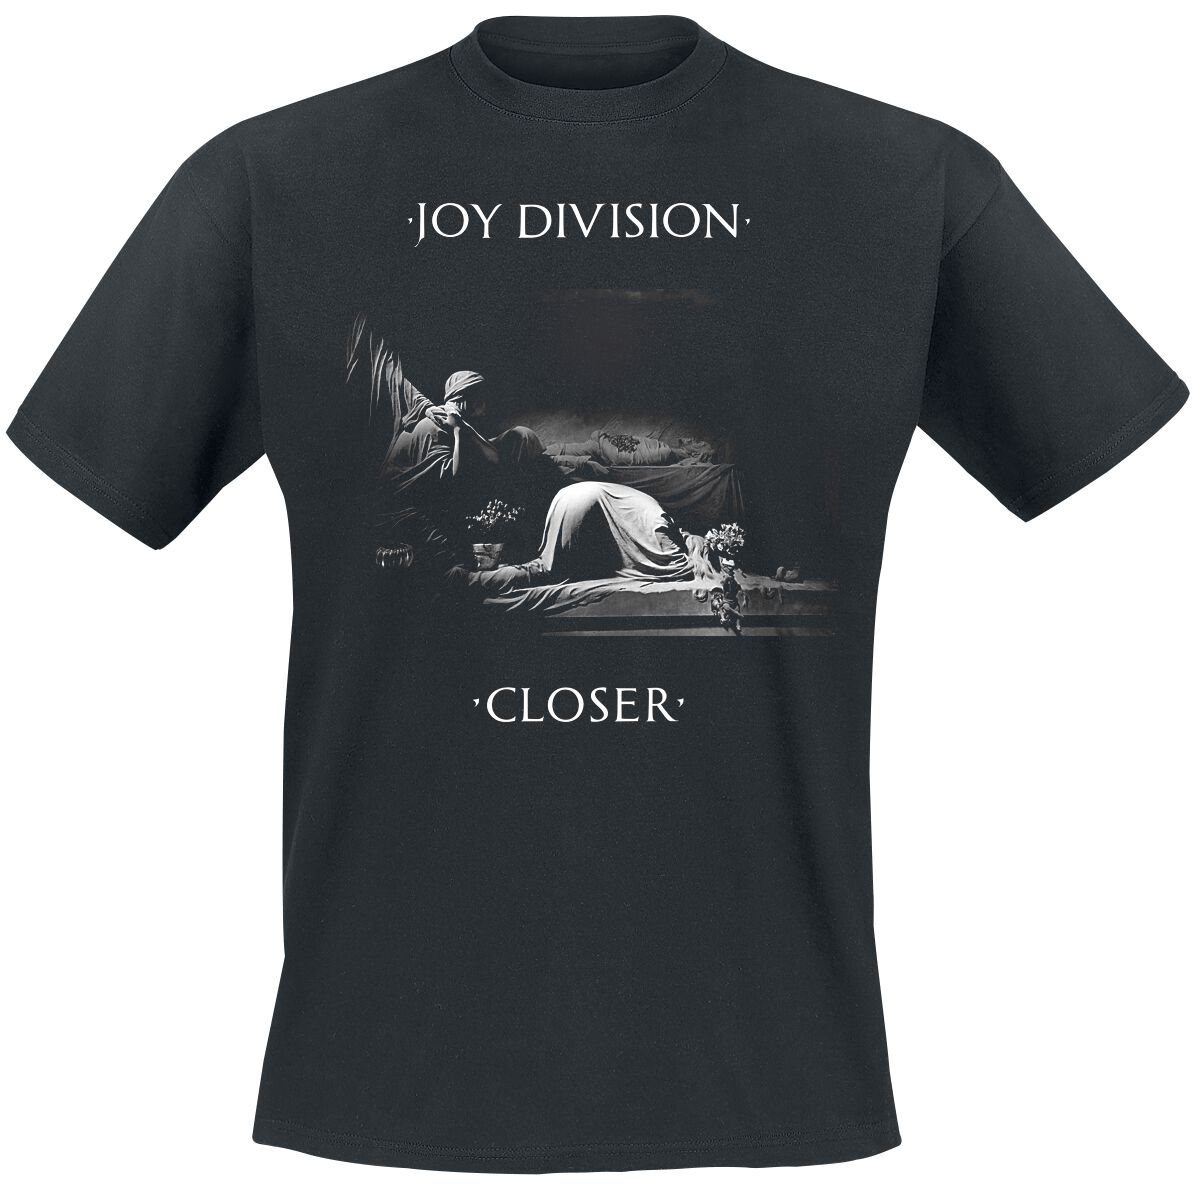 Joy Division T-Shirt - Classic Closer - S bis XXL - für Männer - Größe XXL - schwarz  - Lizenziertes Merchandise!